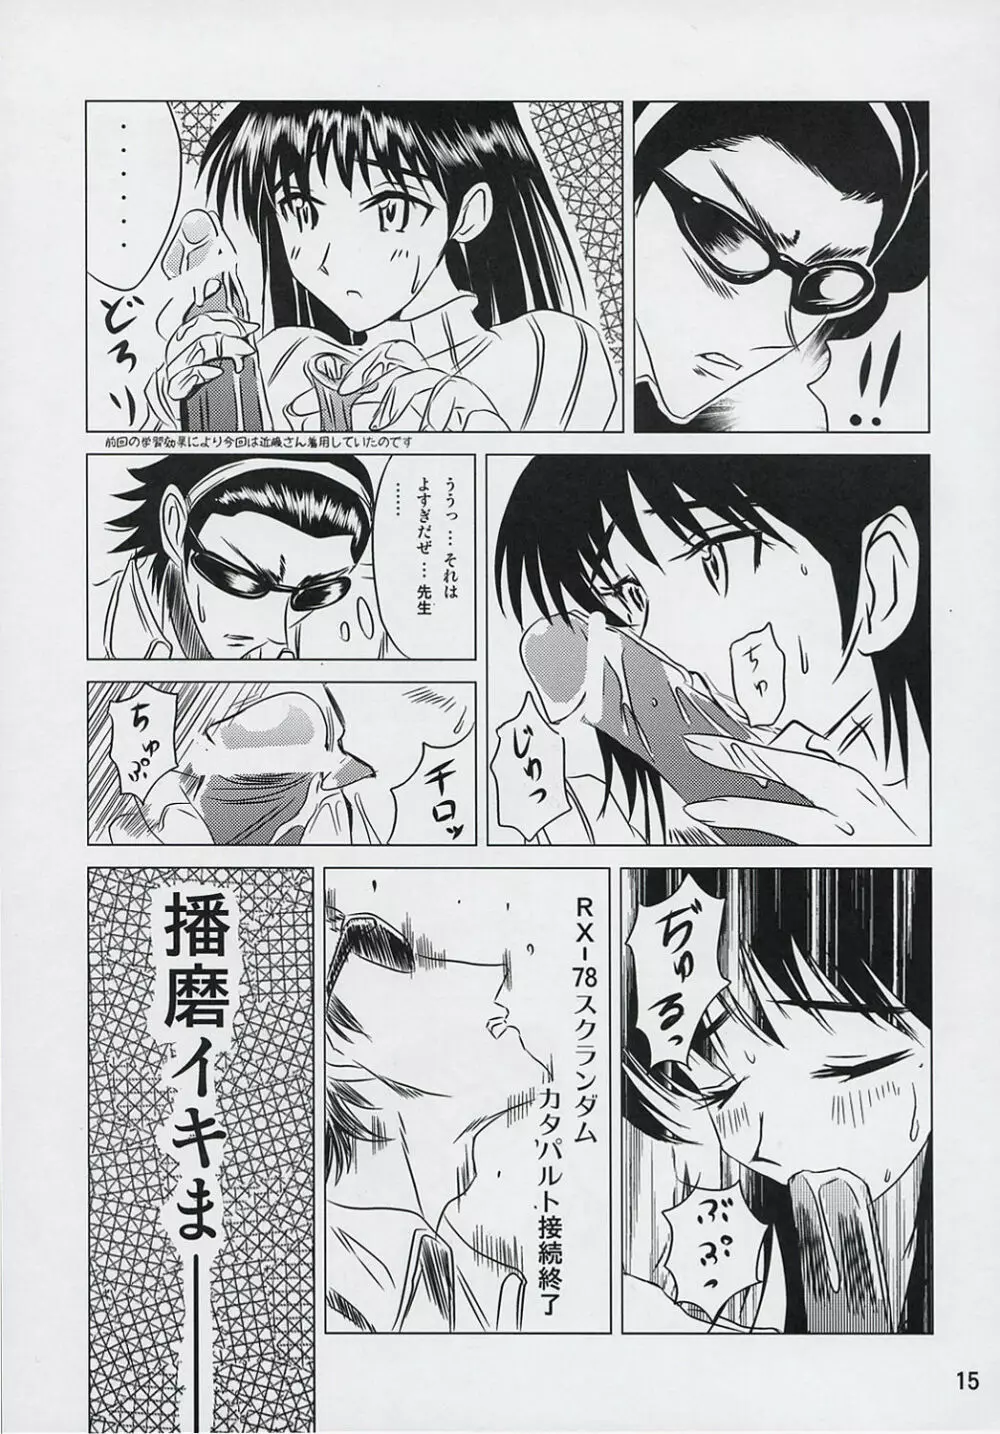 school ちゃんぷるー 6 14ページ